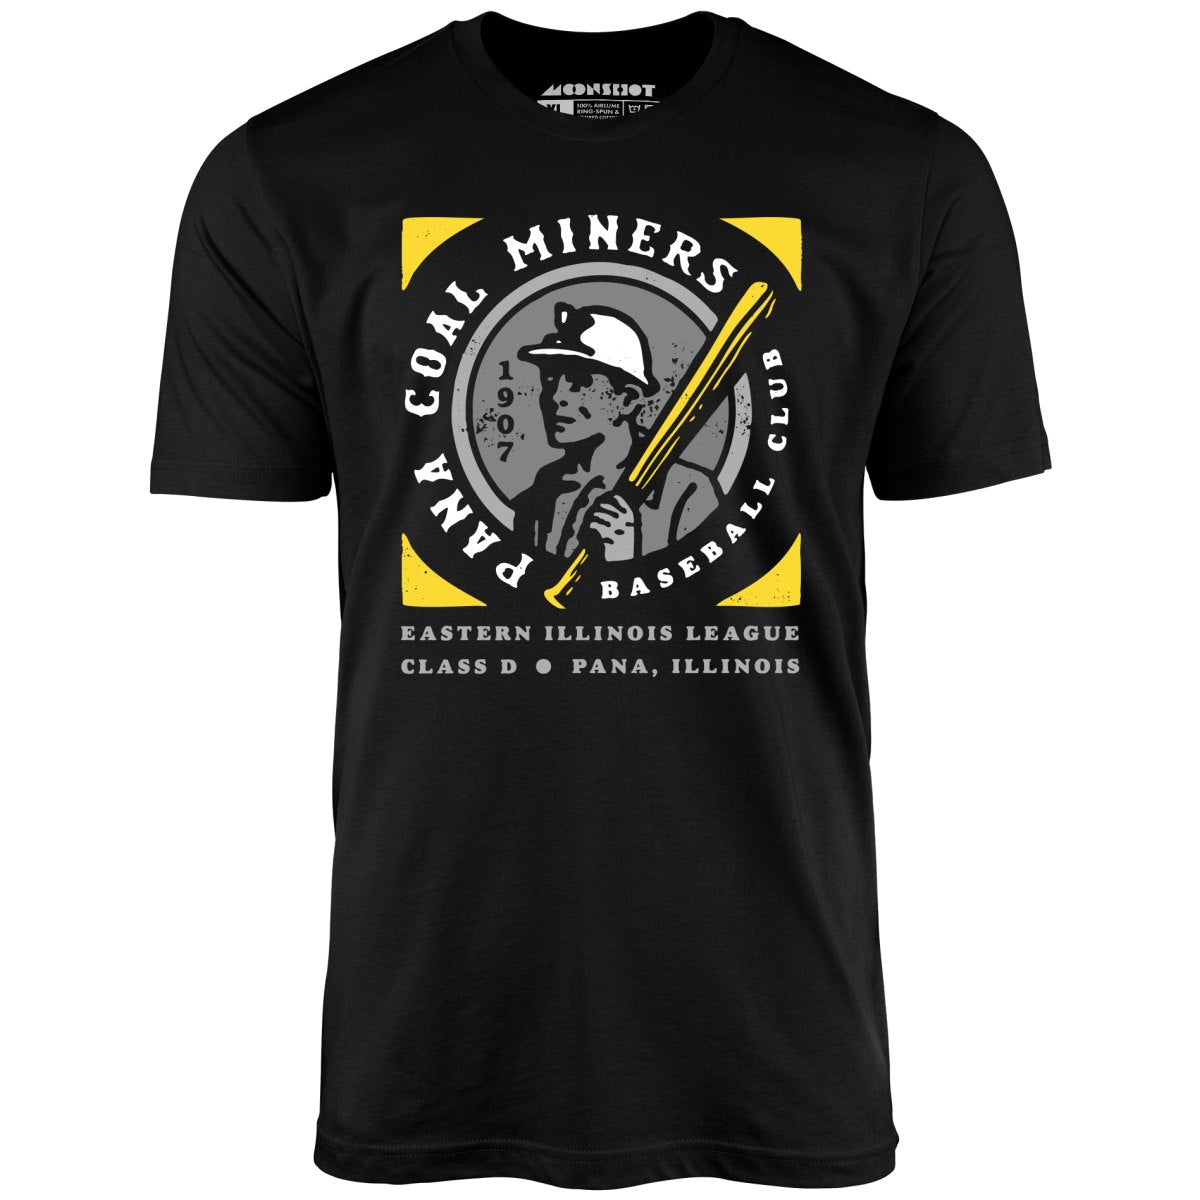 Pana Coal Miners - Illinois - Vintage Defunct Baseball Teams - Unisex T-Shirt